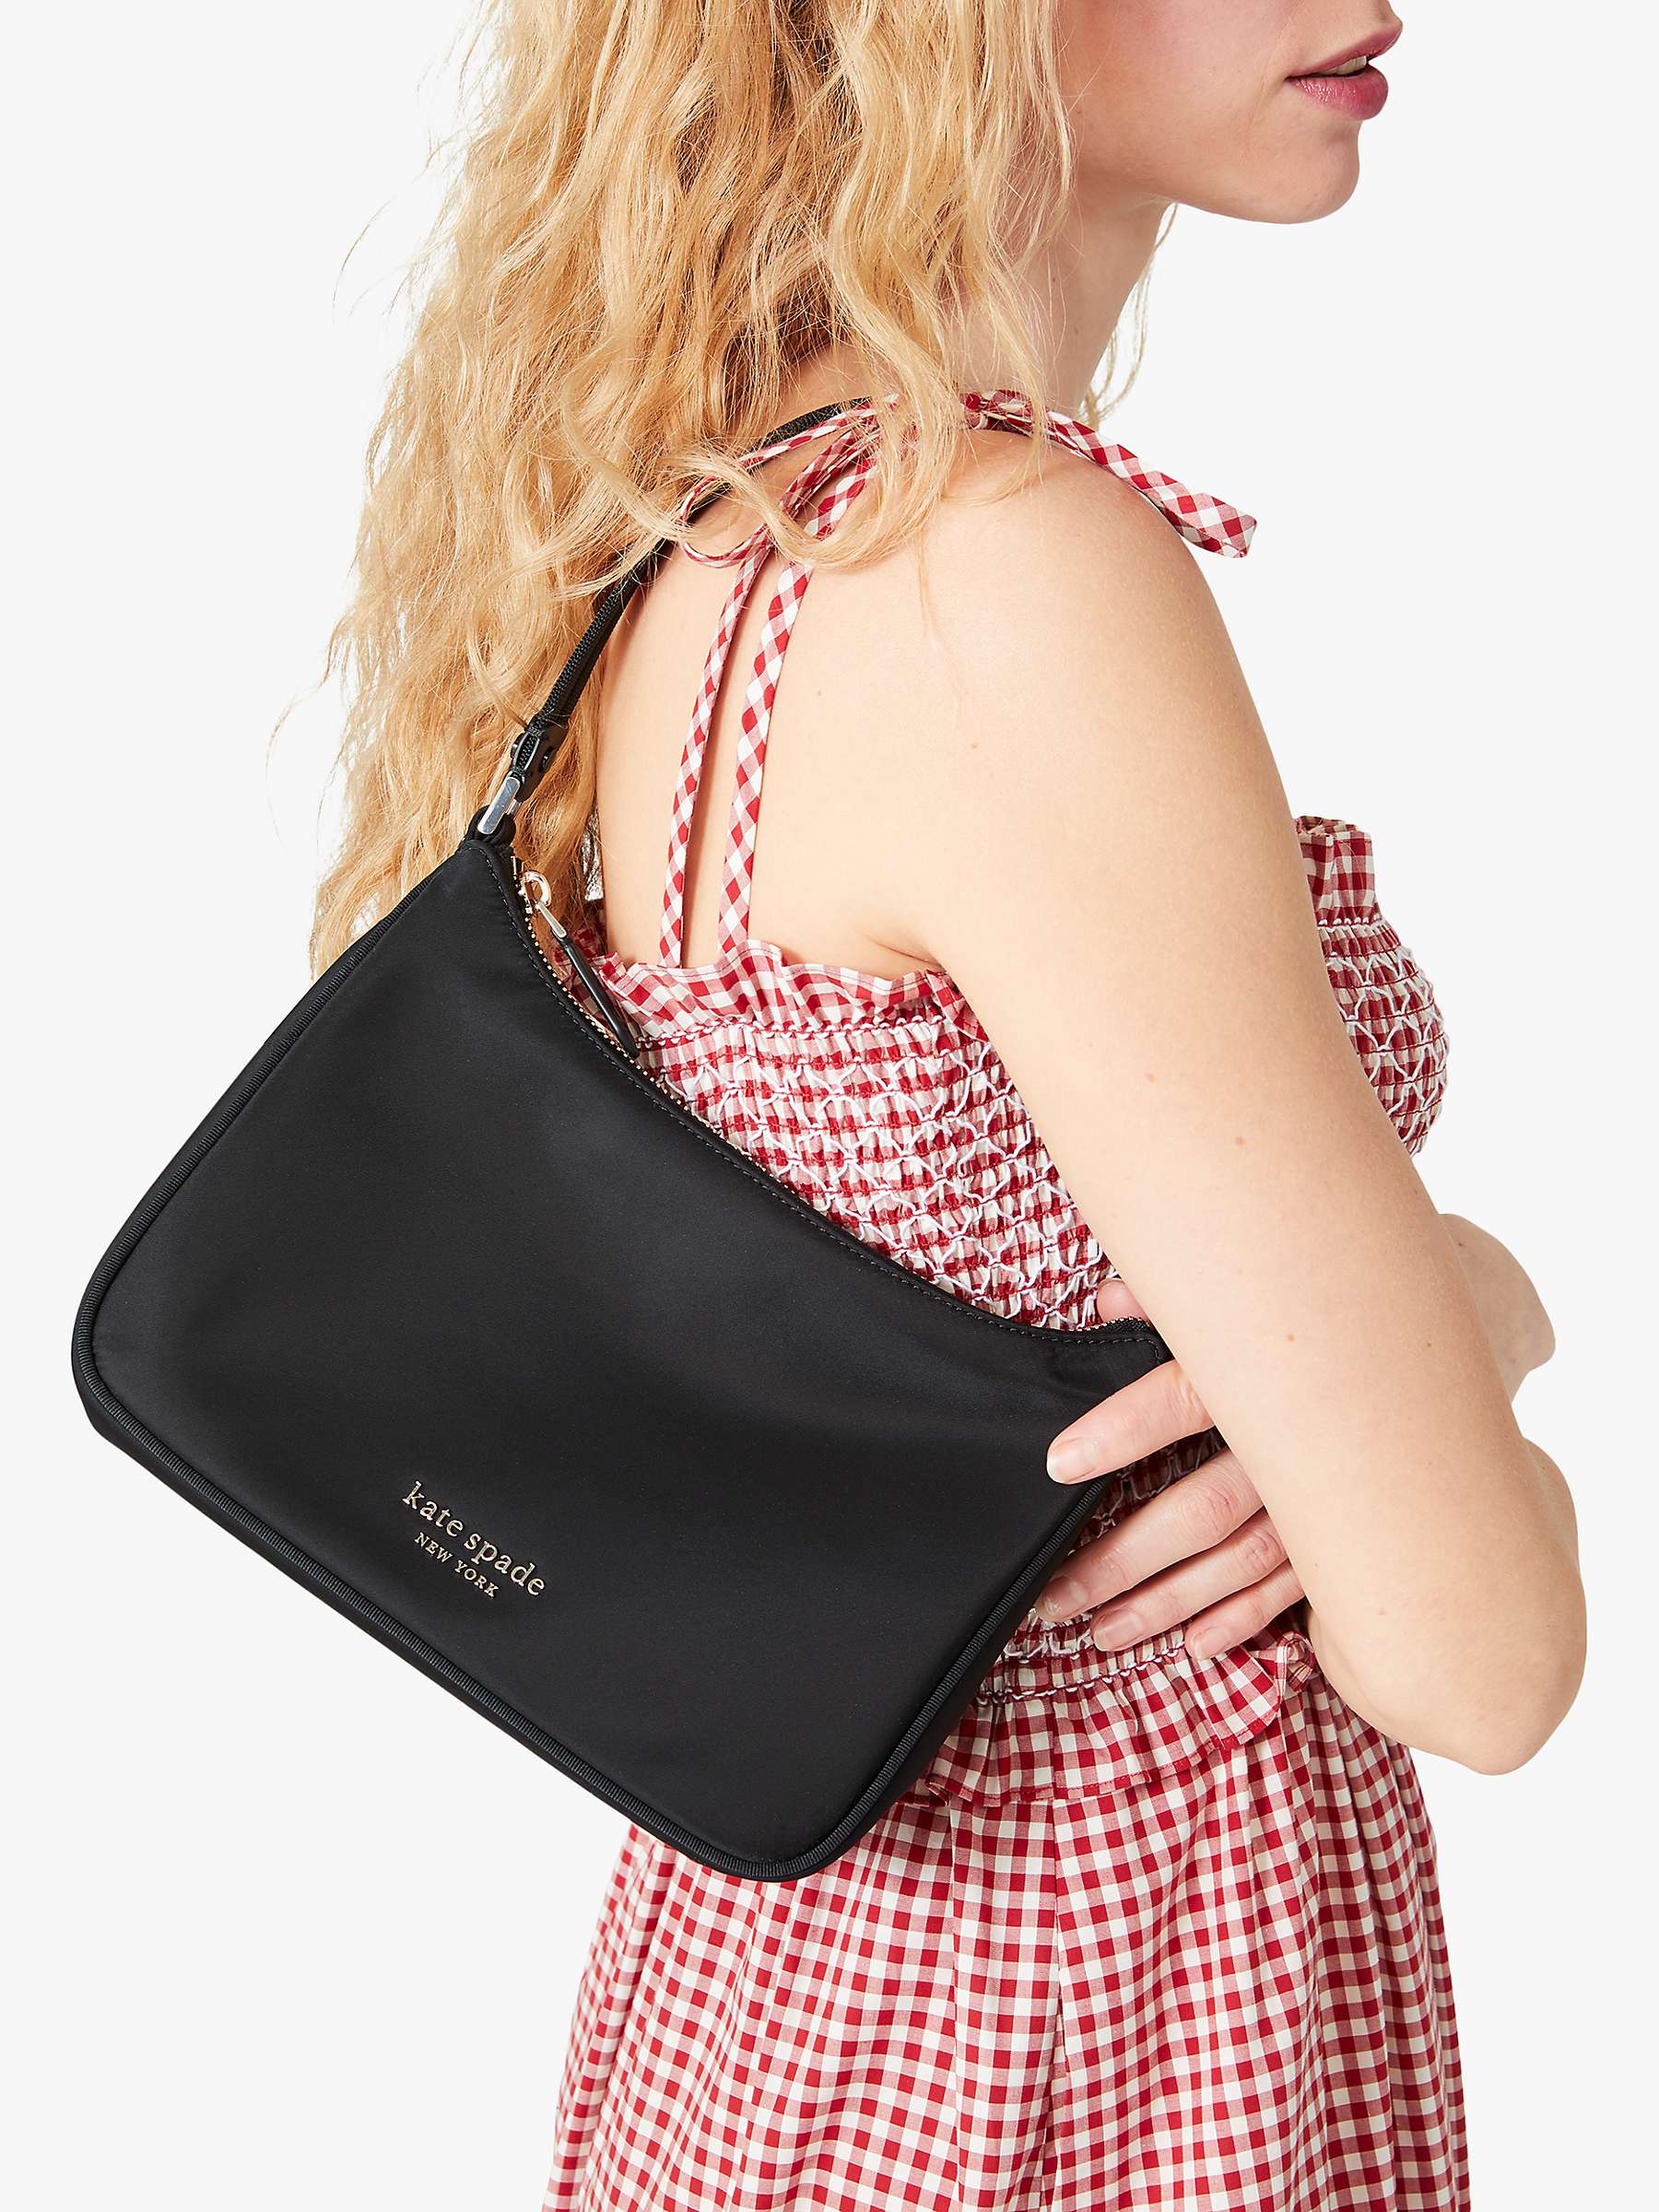 Buy kate spade new york Nylon Shoulder Bag, Black Online at johnlewis.com